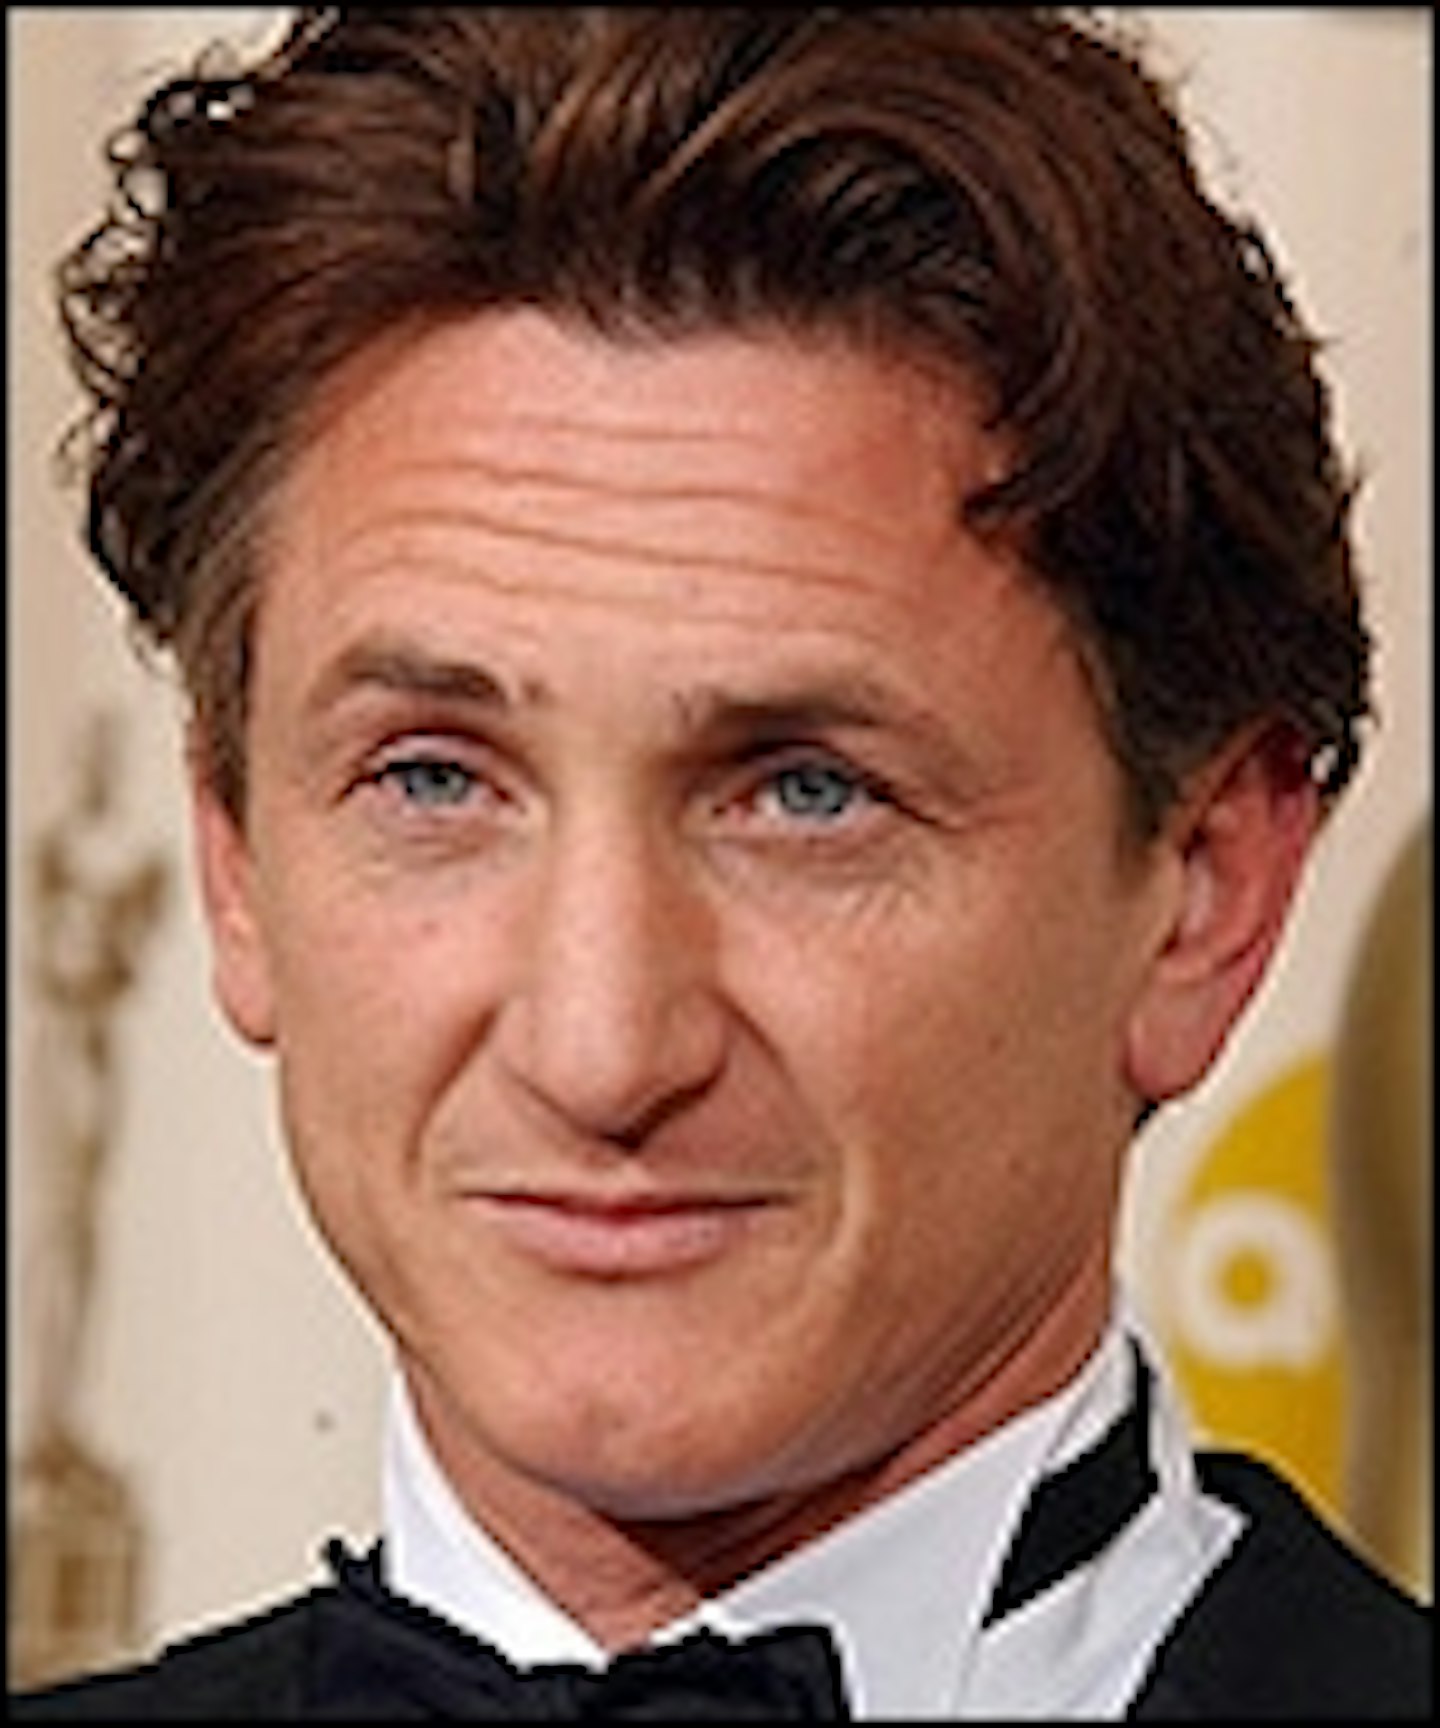 Sean Penn Goes Wild